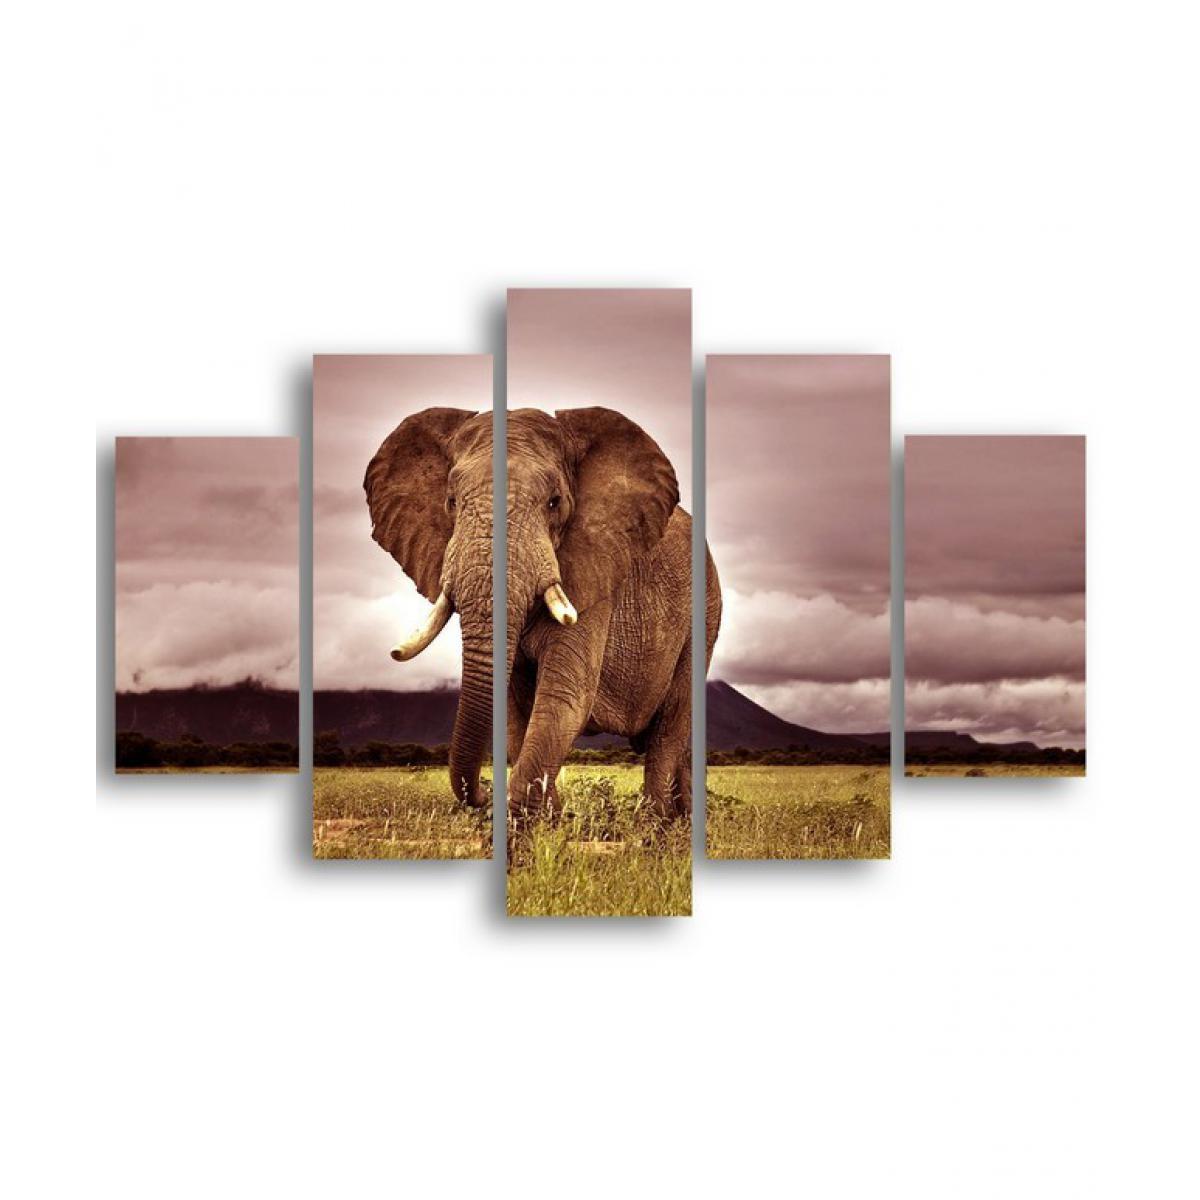 Homemania - HOMEMANIA Tableau De Wall - 5 pièces - Animaux, éléphant - par salon, chambre - Multicouleur en MDF, 95 x 0,3 x 60 cm - Tableaux, peintures